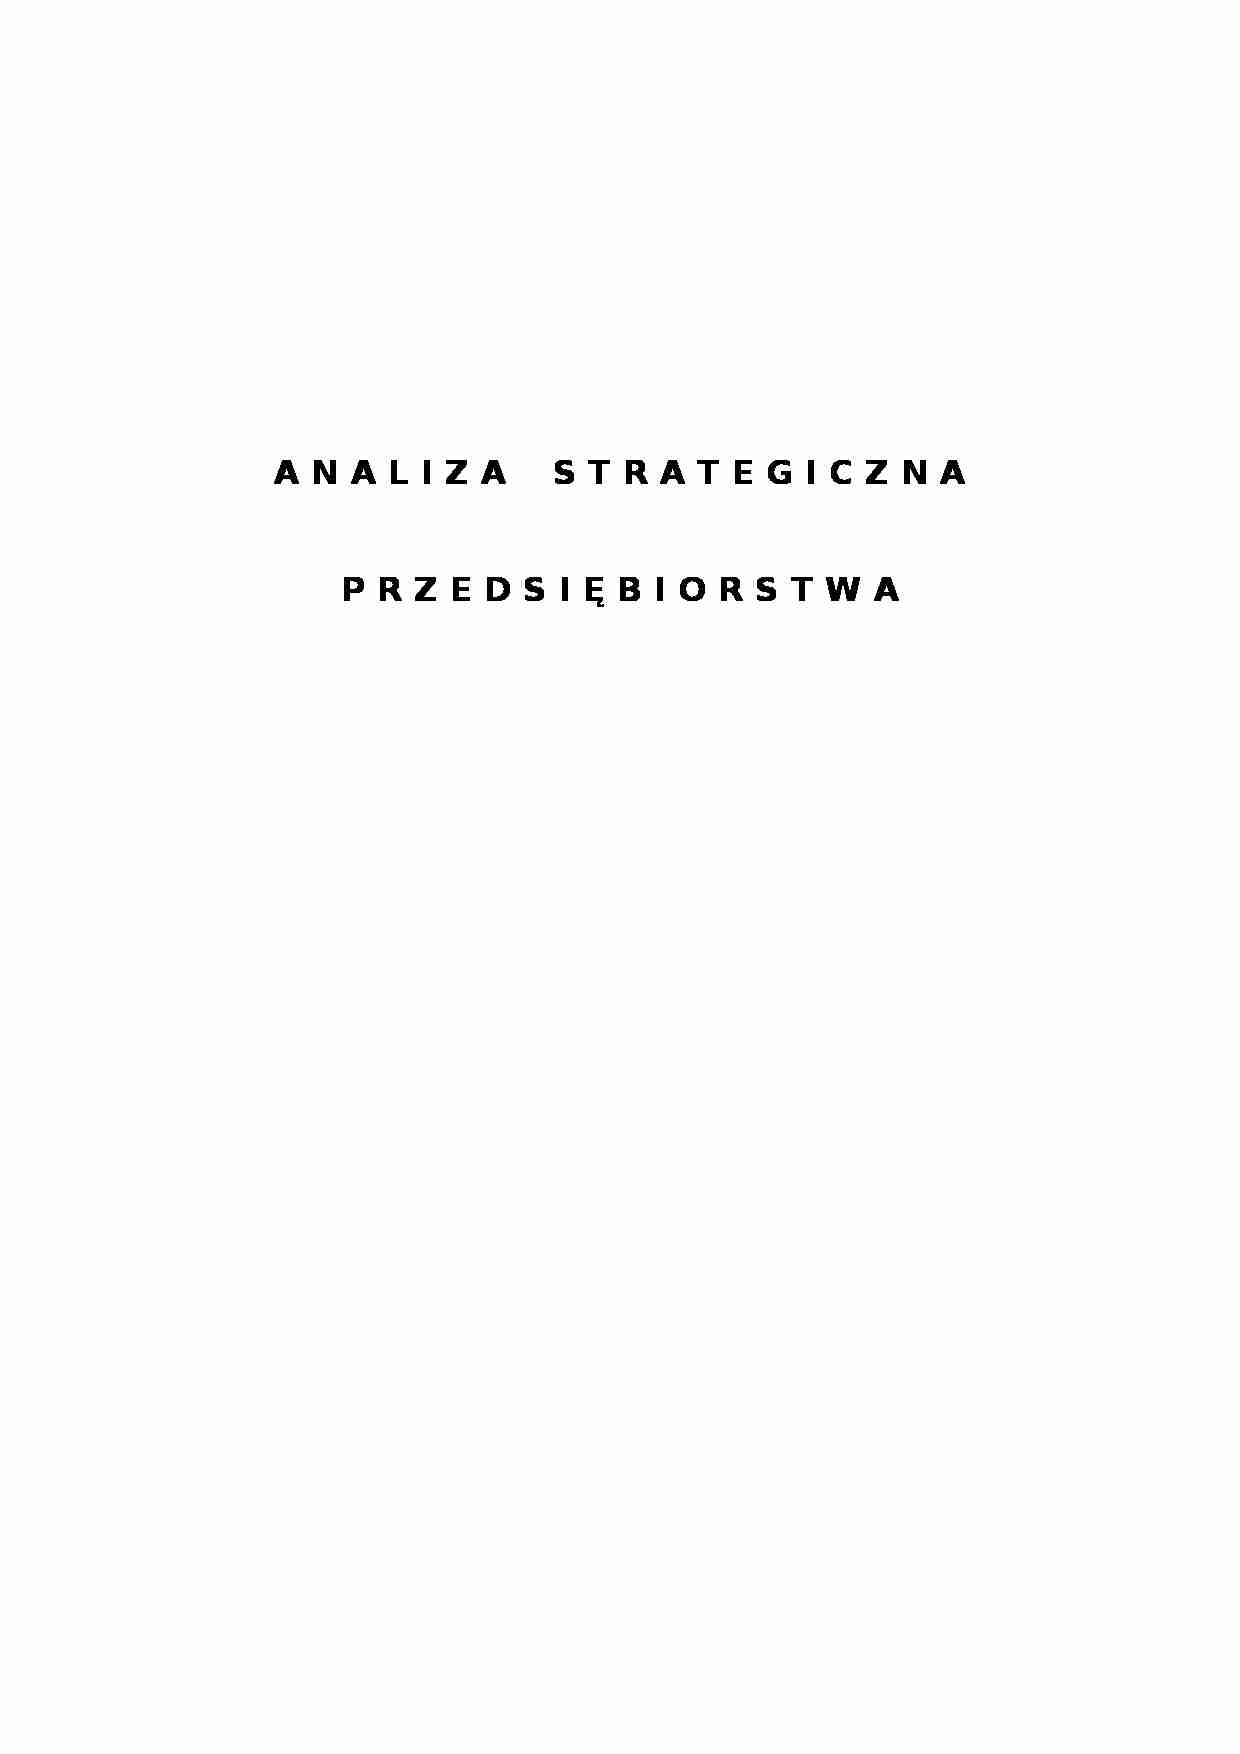 Analiza strategiczna przedsiębiorstwa - Zarządzanie przedsiębiorstwem - strona 1